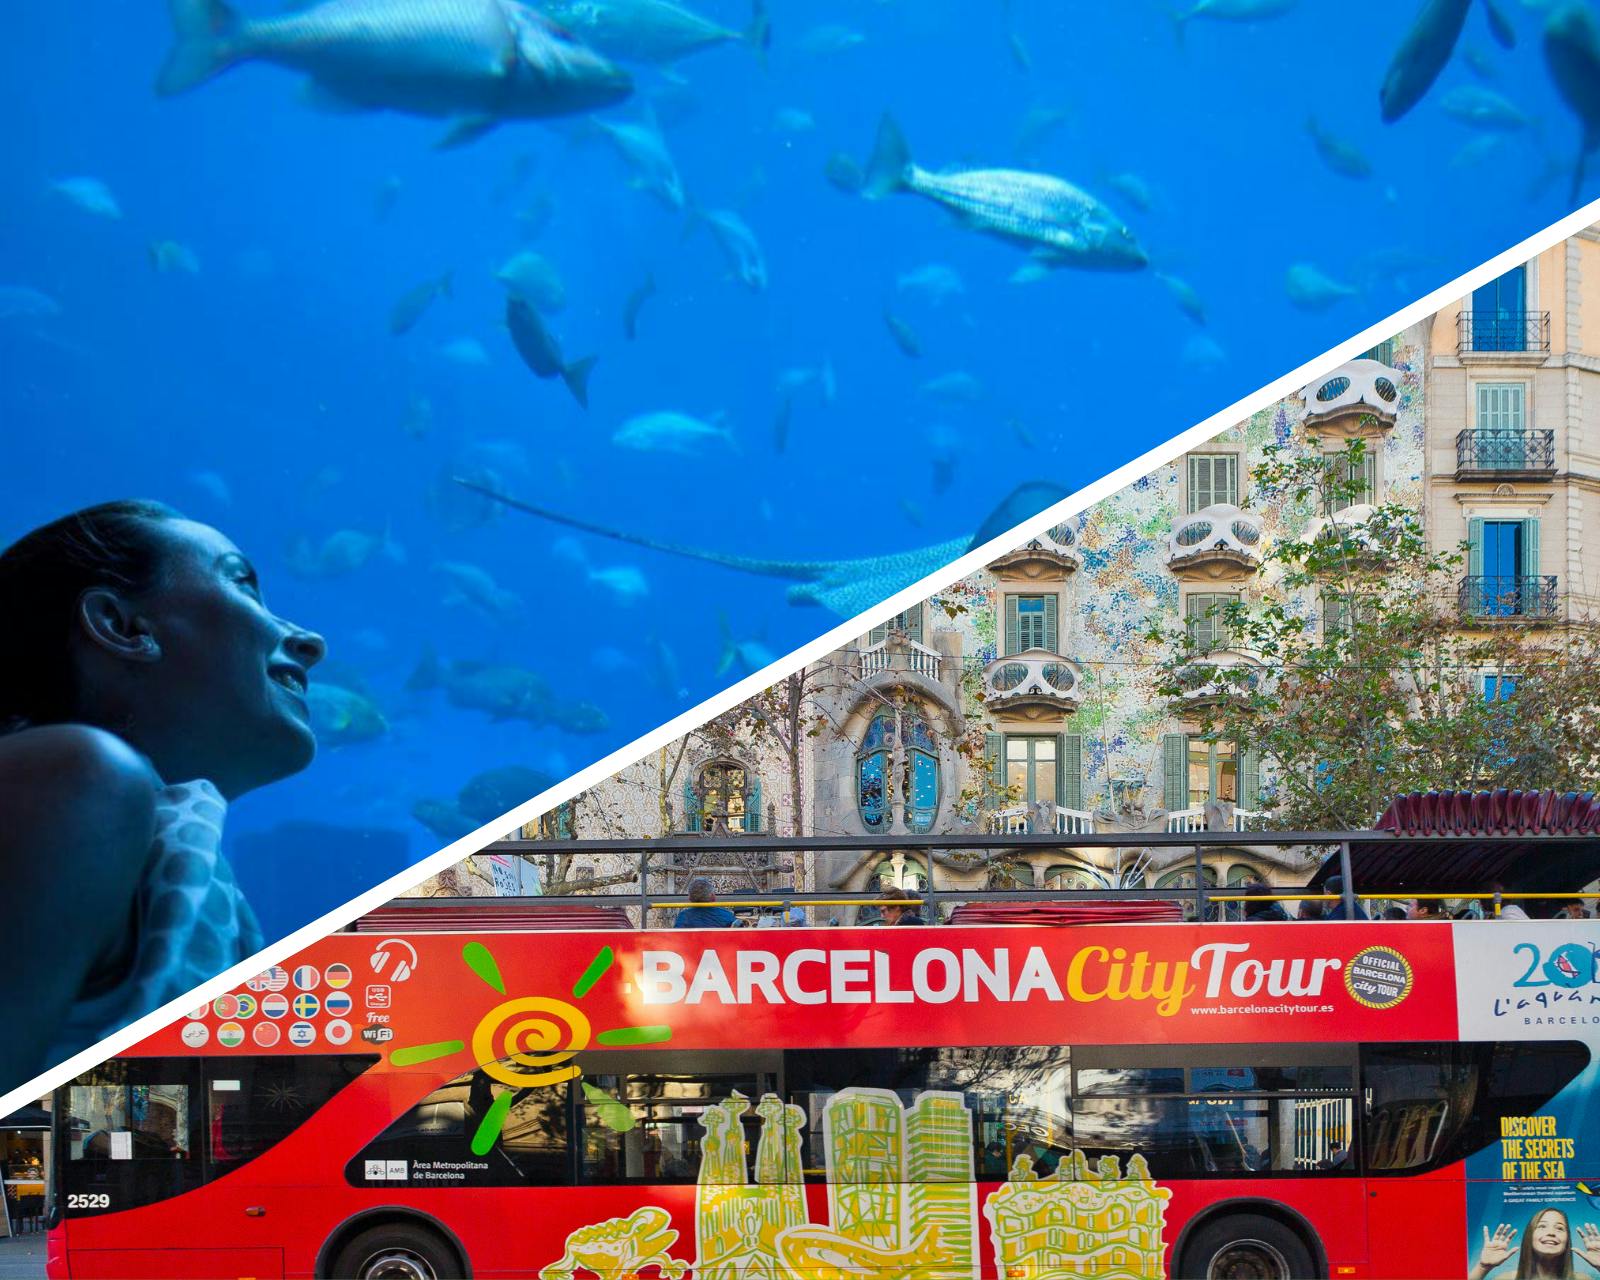 Biglietto dell'autobus hop-on hop-off per il tour della città di Barcellona con l'Acquario